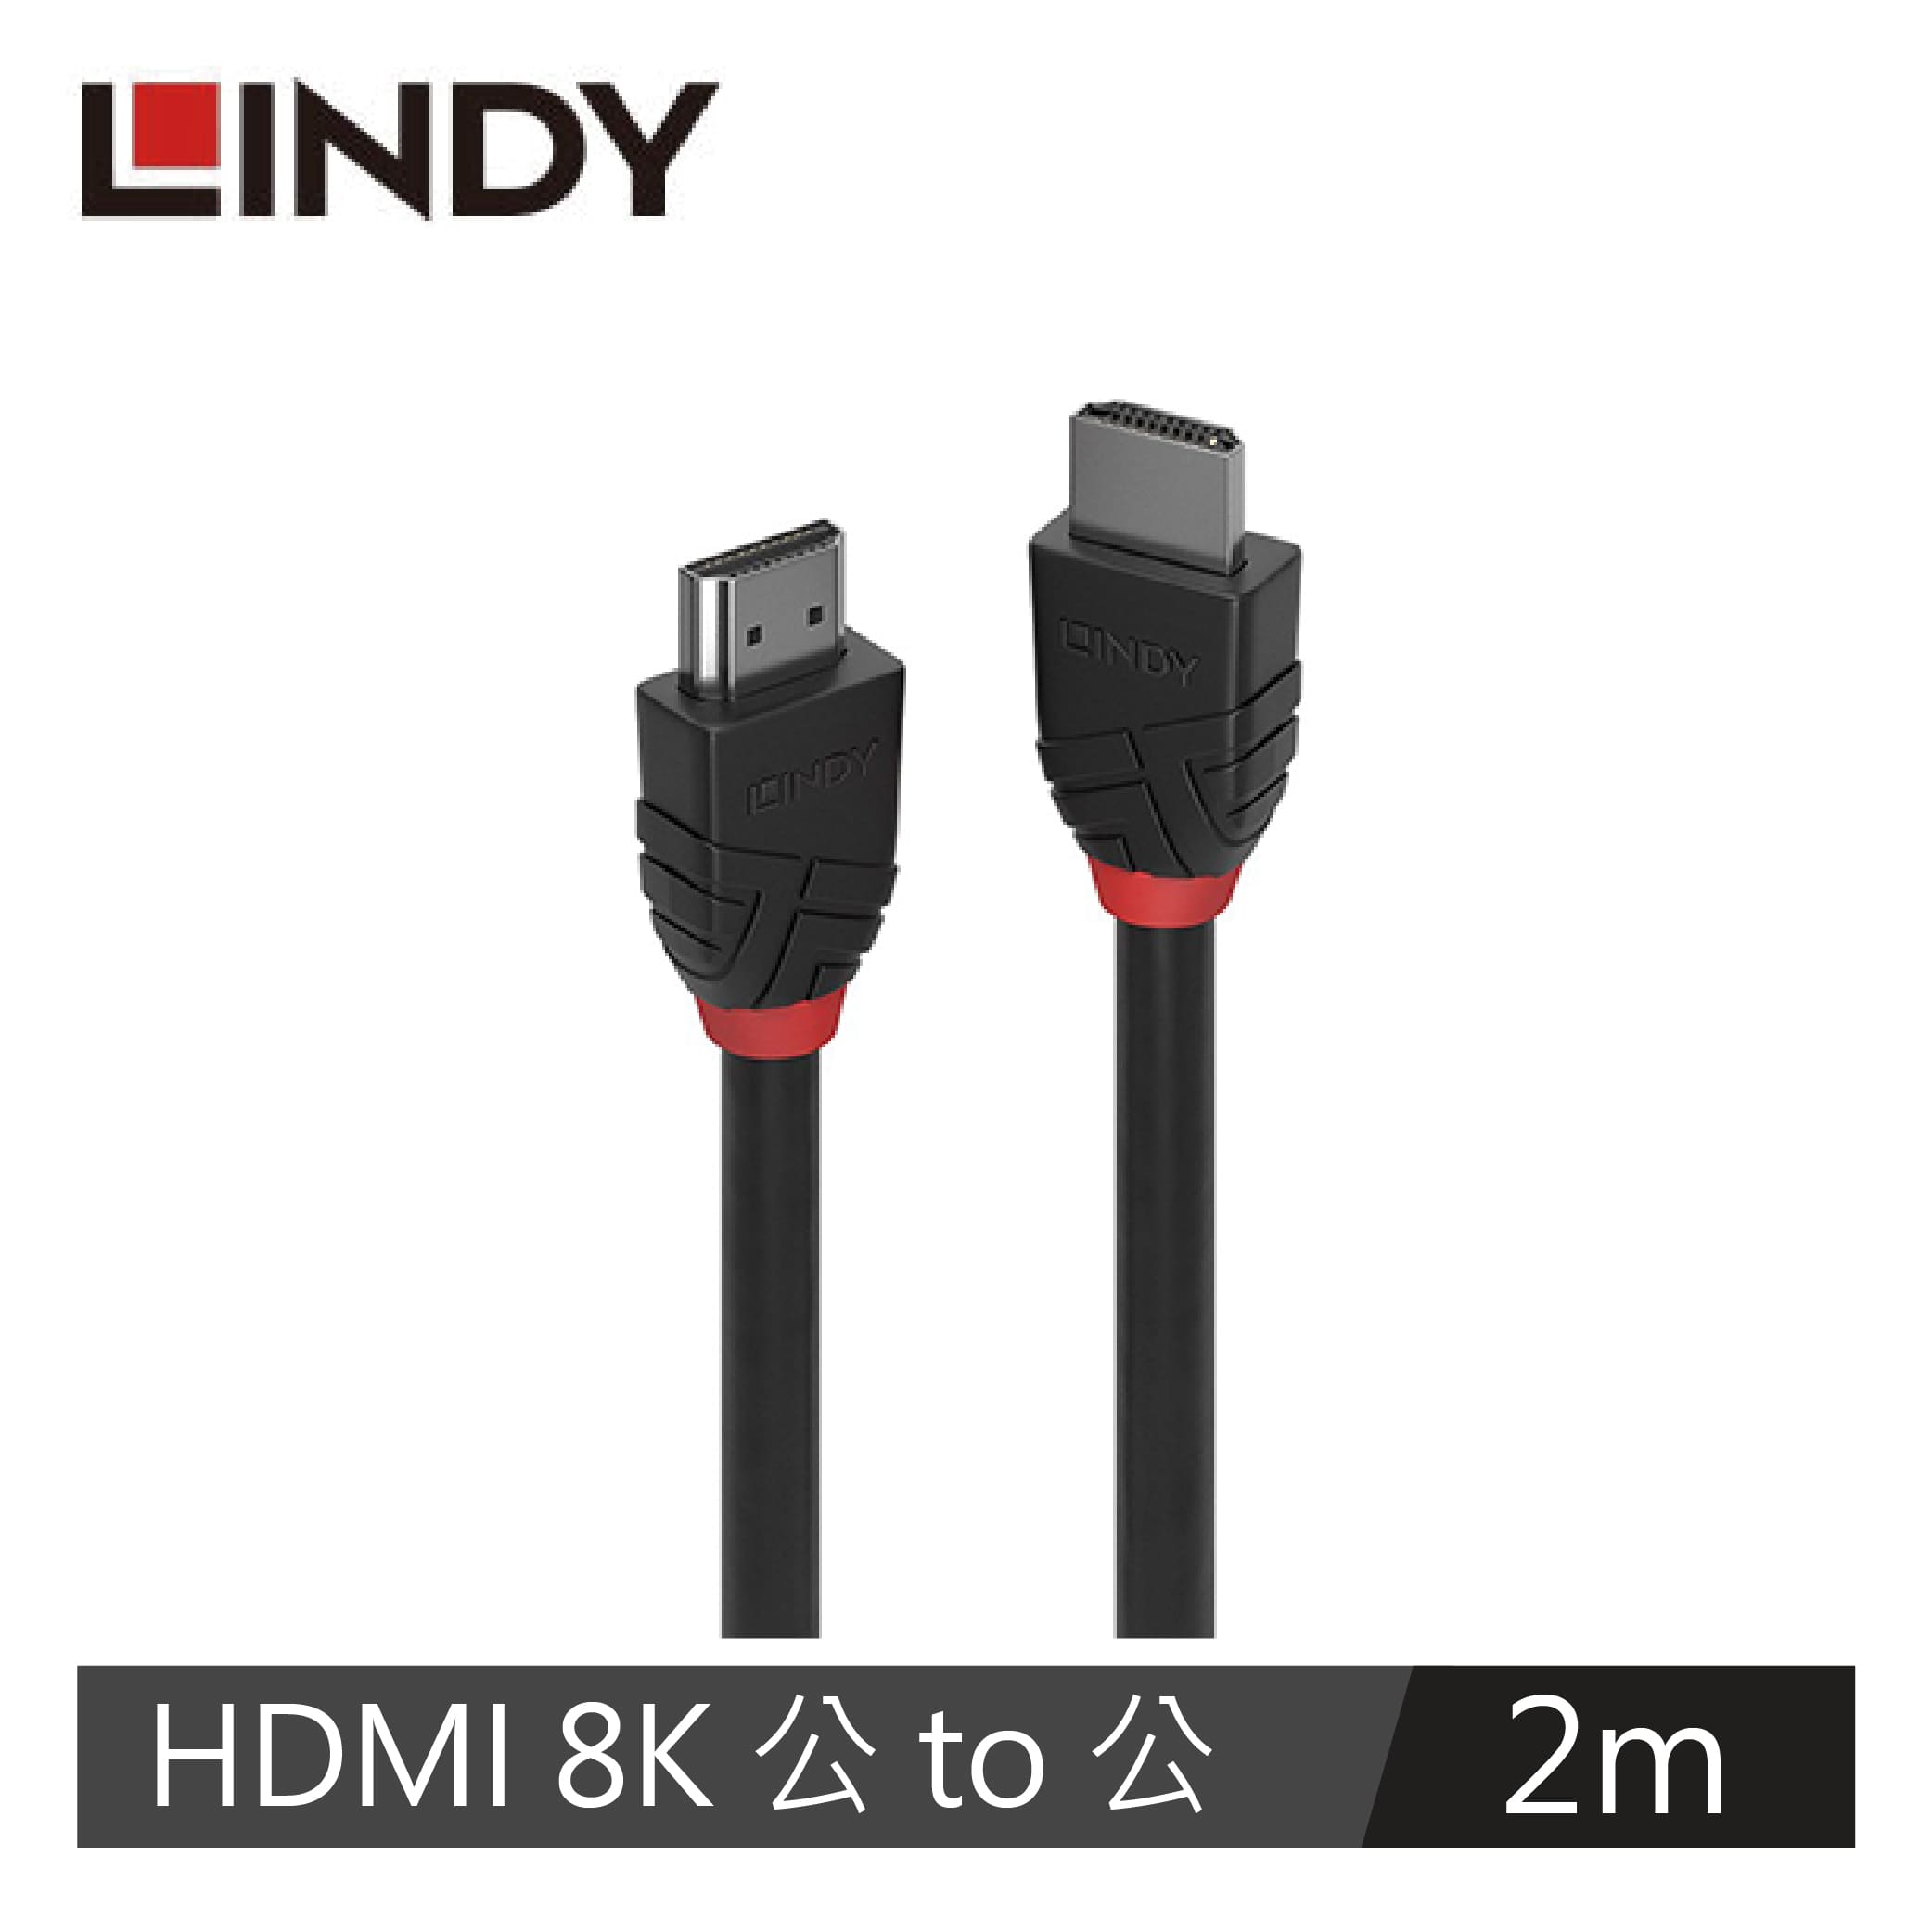 LINDY林帝 BLACK LINE 8K HDMI(TYPE-A) 公 TO 公傳輸線, 2M